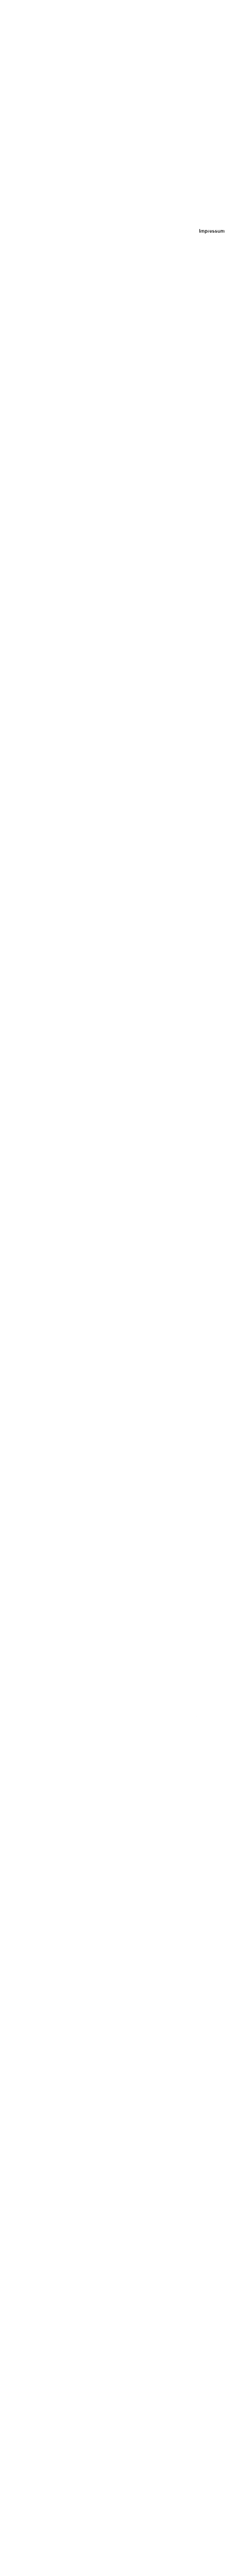 Impressum I. Name und Anschrift des Verantwortlichen Der Verantwortliche im Sinne der Datenschutz-Grundverordnung und anderer nationaler Datenschutzgesetze der Mitgliedsstaaten sowie sonstiger datenschutzrechtlicher Bestimmungen ist die Firma:  Mamma Mia Pizzeria-Abholservice Maria Trausi Luttholsberger Straße 7 88299 Leutkirch Deutschland Tel. +49 (0)7561 9879255 mail@pizzeria-mammamia.net Webseite: www.pizzeria-mammamia.net  II. Allgemeines zur Datenverarbeitung 1.    Umfang der Verarbeitung personenbezogener Daten Wir verarbeiten personenbezogene Daten unserer Nutzer grundsätzlich nur, soweit dies zur Bereitstellung einer funktionsfähigen Website sowie unserer Inhalte und Leistungen erforderlich ist. Die Verarbeitung personenbezogener Daten unserer Nutzer erfolgt regelmäßig nur nach Einwilligung des Nutzers. Eine Ausnahme gilt in solchen Fällen, in denen eine vorherige Einholung einer Einwilligung aus tatsächlichen Gründen nicht möglich ist und die Verarbeitung der Daten durch gesetzliche Vorschriften gestattet ist.   2.    Rechtsgrundlage für die Verarbeitung personenbezogener Daten Soweit wir für Verarbeitungsvorgänge personenbezogener Daten eine Einwilligung der betroffenen Person einholen, dient Art. 6 Abs. 1 lit. a EU-Datenschutzgrundverordnung (DSGVO) als Rechtsgrundlage. Bei der Verarbeitung von personenbezogenen Daten, die zur Erfüllung eines Vertrages, dessen Vertragspartei die betroffene Person ist, erforderlich ist, dient Art. 6 Abs. 1 lit. b DSGVO als Rechtsgrundlage. Dies gilt auch für Verarbeitungsvorgänge, die zur Durchführung vorvertraglicher Maßnahmen erforderlich sind. Soweit eine Verarbeitung personenbezogener Daten zur Erfüllung einer rechtlichen Verpflichtung erforderlich ist, der unser Unternehmen unterliegt, dient Art. 6 Abs. 1 lit. c DSGVO als Rechtsgrundlage. Für den Fall, dass lebenswichtige Interessen der betroffenen Person oder einer anderen natürlichen Person eine Verarbeitung personenbezogener Daten erforderlich machen, dient Art. 6 Abs. 1 lit. d DSGVO als Rechtsgrundlage. Ist die Verarbeitung zur Wahrung eines berechtigten Interesses unseres Unternehmens oder eines Dritten erforderlich und überwiegen die Interessen, Grundrechte und Grundfreiheiten des Betroffenen das erstgenannte Interesse nicht, so dient Art. 6 Abs. 1 lit. f DSGVO als Rechtsgrundlage für die Verarbeitung.  3.    Datenlöschung und Speicherdauer Die personenbezogenen Daten der betroffenen Person werden gelöscht oder gesperrt, sobald der Zweck der Speicherung entfällt. Eine Speicherung kann darüber hinaus erfolgen, wenn dies durch den europäischen oder nationalen Gesetzgeber in unionsrechtlichen Verordnungen, Gesetzen oder sonstigen Vorschriften, denen der Verantwortliche unterliegt, vorgesehen wurde. Eine Sperrung oder Löschung der Daten erfolgt auch dann, wenn eine durch die genannten Normen vorgeschriebene Speicherfrist abläuft, es sei denn, dass eine Erforderlichkeit zur weiteren Speicherung der Daten für einen Vertragsabschluss oder eine Vertragserfüllung besteht. III.  Bereitstellung der Website und Erstellung von Logfiles 1.    Beschreibung und Umfang der Datenverarbeitung Bei jedem Aufruf unserer Internetseite erfasst unser System automatisiert Daten und Informationen vom Computersystem des aufrufenden Rechners.  Folgende Daten werden hierbei erhoben:  1. Informationen über den Browsertyp und die verwendete Version 2. Das Betriebssystem des Nutzers 3.Den Internet-Service-Provider des Nutzers 4. Die IP-Adresse des Nutzers 5. Datum und Uhrzeit des Zugriffs 6. Websites, von denen das System des Nutzers auf unsere Internetseite gelangt 7. Websites, die vom System des Nutzers über unsere Webseite aufgerufen werden IV. Cookies und Analysetools Diese Webseite verwendet weder Cookies noch Analysetools. Eine Überprüfung können Sie über Ihren Broweer unter Einstellungen - Sicherheit durchführen. V.  Kontaktaufnahme über E-Mail Eine Kontaktaufnahme ist über die bereitgestellte E-Mail-Adresse möglich. In diesem Fall werden die mit der E-Mail übermittelten personenbezogenen Daten des Nutzers gespeichert.  Es erfolgt in diesem Zusammenhang keine Weitergabe der Daten an Dritte. Die Daten werden ausschließlich für die Verarbeitung der Konversation verwendet. 1. Rechtsgrundlage für die Datenverarbeitung  Rechtsgrundlage für die Verarbeitung der Daten ist bei Vorliegen einer Einwilligung des Nutzers Art. 6 Abs. 1 lit. a DSGVO. Rechtsgrundlage für die Verarbeitung der Daten, die im Zuge einer Übersendung einer E-Mail übermittelt werden, ist Art. 6 Abs. 1 lit. f DSGVO. Zielt der E-Mail-Kontakt auf den Abschluss eines Vertrages ab, so ist zusätzliche Rechtsgrundlage für die Verarbeitung Art. 6 Abs. 1 lit. b DSGVO. 2.    Zweck der Datenverarbeitung Im Falle einer Kontaktaufnahme per E-Mail liegt hieran auch das erforderliche berechtigte Interesse an der Verarbeitung der Daten. 3.    Dauer der Speicherung Die Daten werden gelöscht, sobald sie für die Erreichung des Zweckes ihrer Erhebung nicht mehr erforderlich sind. dies dann der Fall, wenn die jeweilige Konversation mit dem Nutzer beendet ist. Beendet ist die Konversation dann, wenn sich aus den Umständen entnehmen lässt, dass der betroffene Sachverhalt abschließend geklärt ist.  4.    Widerspruchs- und Beseitigungsmöglichkeit Der Nutzer hat jederzeit die Möglichkeit, seine Einwilligung zur Verarbeitung der personenbezogenen Daten zu widerrufen. Nimmt der Nutzer per E-Mail Kontakt mit uns auf, so kann er der Speicherung seiner personenbezogenen Daten jederzeit widersprechen. In einem solchen Fall kann die Konversation nicht fortgeführt werden. VI. Rechte der betroffenen Person Werden personenbezogene Daten von Ihnen verarbeitet, sind Sie Betroffener i.S.d. DSGVO und es stehen Ihnen folgende Rechte gegenüber dem Verantwortlichen zu: 1.    Auskunftsrecht Sie können von dem Verantwortlichen eine Bestätigung darüber verlangen, ob personenbezogene Daten, die Sie betreffen, von uns verarbeitet werden. Liegt eine solche Verarbeitung vor, können Sie von dem Verantwortlichen über folgende Informationen Auskunft verlangen: (1)      die Zwecke, zu denen die personenbezogenen Daten verarbeitet werden; (2)      die Kategorien von personenbezogenen Daten, welche verarbeitet werden; (3)	die Empfänger bzw. die Kategorien von Empfängern, gegenüber denen die Sie betreffenden personenbezogenen Daten offengelegt wurden oder noch offengelegt werden; (4)	die geplante Dauer der Speicherung der Sie betreffenden personenbezogenen Daten oder, falls konkrete Angaben hierzu nicht möglich sind, Kriterien für die Festlegung der Speicherdauer; (5)	das Bestehen eines Rechts auf Berichtigung oder Löschung der Sie betreffenden personenbezogenen Daten, eines Rechts auf Einschränkung der Verarbeitung durch den Verantwortlichen oder eines Widerspruchsrechts gegen diese Verarbeitung;  (6)	das Bestehen eines Beschwerderechts bei einer Aufsichtsbehörde; (7)	alle verfügbaren Informationen über die Herkunft der Daten, wenn die personenbezogenen Daten nicht bei der betroffenen Person erhoben werden; (8)	das Bestehen einer automatisierten Entscheidungsfindung einschließlich Profiling gemäß Art. 22 Abs. 1 und 4 DSGVO und – zumindest in diesen Fällen – aussagekräftige Informationen über die involvierte Logik sowie die Tragweite und die angestrebten Auswirkungen einer derartigen Verarbeitung für die betroffene Person. Ihnen steht das Recht zu, Auskunft darüber zu verlangen, ob die Sie betreffenden personenbezogenen Daten in ein Drittland oder an eine internationale Organisation übermittelt werden. In diesem Zusammenhang können Sie verlangen, über die geeigneten Garantien gem. Art. 46 DSGVO im Zusammenhang mit der Übermittlung unterrichtet zu werden. 2.    Recht auf Berichtigung  Sie haben ein Recht auf Berichtigung und/oder Vervollständigung gegenüber dem Verantwortlichen, sofern die verarbeiteten personenbezogenen Daten, die Sie betreffen, unrichtig oder unvollständig sind. Der Verantwortliche hat die Berichtigung unverzüglich vorzunehmen. 3.    Recht auf Einschränkung der Verarbeitung Unter den folgenden Voraussetzungen können Sie die Einschränkung der Verarbeitung der Sie betreffenden personenbezogenen Daten verlangen: (1)	wenn Sie die Richtigkeit der Sie betreffenden personenbezogenen für eine Dauer bestreiten, die es dem Verantwortlichen ermöglicht, die Richtigkeit der personenbezogenen Daten zu überprüfen; (2)	die Verarbeitung unrechtmäßig ist und Sie die Löschung der personenbezogenen Daten ablehnen und stattdessen die Einschränkung der Nutzung der personenbezogenen Daten verlangen; (3)	der Verantwortliche die personenbezogenen Daten für die Zwecke der Verarbeitung nicht länger benötigt, Sie diese jedoch zur Geltendmachung, Ausübung oder Verteidigung von Rechtsansprüchen benötigen, oder (4)	wenn Sie Widerspruch gegen die Verarbeitung gemäß Art. 21 Abs. 1 DSGVO eingelegt haben und noch nicht feststeht, ob die berechtigten Gründe des Verantwortlichen gegenüber Ihren Gründen überwiegen. Wurde die Verarbeitung der Sie betreffenden personenbezogenen Daten eingeschränkt, dürfen diese Daten – von ihrer Speicherung abgesehen – nur mit Ihrer Einwilligung oder zur Geltendmachung, Ausübung oder Verteidigung von Rechtsansprüchen oder zum Schutz der Rechte einer anderen natürlichen oder juristischen Person oder aus Gründen eines wichtigen öffentlichen Interesses der Union oder eines Mitgliedstaats verarbeitet werden. Wurde die Einschränkung der Verarbeitung nach den o.g. Voraussetzungen eingeschränkt, werden Sie von dem Verantwortlichen unterrichtet bevor die Einschränkung aufgehoben wird. 4.    Recht auf Löschung (a)   Löschungspflicht Sie können von dem Verantwortlichen verlangen, dass die Sie betreffenden personenbezogenen Daten unverzüglich gelöscht werden, und der Verantwortliche ist verpflichtet, diese Daten unverzüglich zu löschen, sofern einer der folgenden Gründe zutrifft: (1)	Die Sie betreffenden personenbezogenen Daten sind für die Zwecke, für die sie erhoben oder auf sonstige Weise verarbeitet wurden, nicht mehr notwendig. (2)	Sie widerrufen Ihre Einwilligung, auf die sich die Verarbeitung gem. Art. 6 Abs. 1 lit. a oder Art. 9 Abs. 2 lit. a DSGVO stützte, und es fehlt an einer anderweitigen Rechtsgrundlage für die Verarbeitung.  (3)	Sie legen gem. Art. 21 Abs. 1 DSGVO Widerspruch gegen die Verarbeitung ein und es liegen keine vorrangigen berechtigten Gründe für die Verarbeitung vor, oder Sie legen gem. Art. 21 Abs. 2 DSGVO Widerspruch gegen die Verarbeitung ein.  (4)	Die Sie betreffenden personenbezogenen Daten wurden unrechtmäßig            verarbeitet      (5)	Die Löschung der Sie betreffenden personenbezogenen Daten ist zur Erfüllung einer rechtlichen Verpflichtung nach dem Unionsrecht oder dem Recht der Mitgliedstaaten erforderlich, dem der Verantwortliche unterliegt.  (6)		Die Sie betreffenden personenbezogenen Daten wurden in Bezug auf angebotene Dienste der Informationsgesellschaft gemäß Art. 8 Abs. 1 DSGVO erhoben. (a)      Information an Dritte  Hat der Verantwortliche die Sie betreffenden personenbezogenen Daten öffentlich gemacht und ist er gem. Art. 17 Abs. 1 DSGVO zu deren Löschung verpflichtet, so trifft er unter Berücksichtigung der verfügbaren Technologie und der Implementierungskosten angemessene Maßnahmen, auch technischer Art, um für die Datenverarbeitung Verantwortliche, die die personenbezogenen Daten verarbeiten, darüber zu informieren, dass Sie als betroffene Person von ihnen die Löschung aller Links zu diesen personenbezogenen Daten oder von Kopien oder Replikationen dieser personenbezogenen Daten verlangt haben.  (a)      Ausnahmen Das Recht auf Löschung besteht nicht, soweit die Verarbeitung erforderlich ist (1)	zur Ausübung des Rechts auf freie Meinungsäußerung und Information; (2)	zur Erfüllung einer rechtlichen Verpflichtung, die die Verarbeitung nach dem Recht der Union oder der Mitgliedstaaten, dem der Verantwortliche unterliegt, erfordert, oder zur Wahrnehmung einer Aufgabe, die im öffentlichen Interesse liegt oder in Ausübung öffentlicher Gewalt erfolgt, die dem Verantwortlichen übertragen wurde; (3)	aus Gründen des öffentlichen Interesses im Bereich der öffentlichen Gesundheit gemäß Art. 9 Abs. 2 lit. h und i sowie Art. 9 Abs. 3 DSGVO; (4)	für im öffentlichen Interesse liegende Archivzwecke, wissenschaftliche oder historische Forschungszwecke oder für statistische Zwecke gem. Art. 89 Abs. 1 DSGVO, soweit das unter Abschnitt a) genannte Recht voraussichtlich die Verwirklichung der Ziele dieser Verarbeitung unmöglich macht oder ernsthaft beeinträchtigt, oder (5)	zur Geltendmachung, Ausübung oder Verteidigung von Rechtsansprüchen 5.    Recht auf Unterrichtung Haben Sie das Recht auf Berichtigung, Löschung oder Einschränkung der Verarbeitung gegenüber dem Verantwortlichen geltend gemacht, ist dieser verpflichtet, allen Empfängern, denen die Sie betreffenden personenbezogenen Daten offengelegt wurden, diese Berichtigung oder Löschung der Daten oder Einschränkung der Verarbeitung mitzuteilen, es sei denn, dies erweist sich als unmöglich oder ist mit einem unverhältnismäßigen Aufwand verbunden. Ihnen steht gegenüber dem Verantwortlichen das Recht zu, über diese Empfänger unterrichtet zu werden.  6.    Recht auf Datenübertragbarkeit Sie haben das Recht, die Sie betreffenden personenbezogenen Daten, die Sie dem Verantwortlichen bereitgestellt haben, in einem strukturierten, gängigen und maschinenlesbaren Format zu erhalten. Außerdem haben Sie das Recht diese Daten einem anderen Verantwortlichen ohne Behinderung durch den Verantwortlichen, dem die personenbezogenen Daten bereitgestellt wurden, zu übermitteln, sofern (1)     die Verarbeitung auf einer Einwilligung gem. Art. 6 Abs. 1 lit. a DSGVO oder Art. 9 Abs. 2 lit. a DSGVO oder auf einem Vertrag gem. Art. 6 Abs. 1 lit. b DSGVO beruht und (2)      die Verarbeitung mithilfe automatisierter Verfahren erfolgt. In Ausübung dieses Rechts haben Sie ferner das Recht, zu erwirken, dass die Sie betreffenden personenbezogenen Daten direkt von einem Verantwortlichen einem anderen Verantwortlichen übermittelt werden, soweit dies technisch machbar ist. Freiheiten und Rechte anderer Personen dürfen hierdurch nicht beeinträchtigt werden. Das Recht auf Datenübertragbarkeit gilt nicht für eine Verarbeitung personenbezogener Daten, die für die Wahrnehmung einer Aufgabe erforderlich ist, die im öffentlichen Interesse liegt oder in Ausübung öffentlicher Gewalt erfolgt, die dem Verantwortlichen übertragen wurde. 7.    Widerspruchsrecht Sie haben das Recht, aus Gründen, die sich aus ihrer besonderen Situation ergeben, jederzeit gegen die Verarbeitung der Sie betreffenden personenbezogenen Daten, die aufgrund von Art. 6 Abs. 1 lit. e oder f DSGVO erfolgt, Widerspruch einzulegen; dies gilt auch für ein auf diese Bestimmungen gestütztes Profiling.  Der Verantwortliche verarbeitet die Sie betreffenden personenbezogenen Daten nicht mehr, es sei denn, er kann zwingende schutzwürdige Gründe für die Verarbeitung nachweisen, die Ihre Interessen, Rechte und Freiheiten überwiegen, oder die Verarbeitung dient der Geltendmachung, Ausübung oder Verteidigung von Rechtsansprüchen. Werden die Sie betreffenden personenbezogenen Daten verarbeitet, um Direktwerbung zu betreiben, haben Sie das Recht, jederzeit Widerspruch gegen die Verarbeitung der Sie betreffenden personenbezogenen Daten zum Zwecke derartiger Werbung einzulegen; dies gilt auch für das Profiling, soweit es mit solcher Direktwerbung in Verbindung steht. Widersprechen Sie der Verarbeitung für Zwecke der Direktwerbung, so werden die Sie betreffenden personenbezogenen Daten nicht mehr für diese Zwecke verarbeitet. Sie haben die Möglichkeit, im Zusammenhang mit der Nutzung von Diensten der Informationsgesellschaft – ungeachtet der Richtlinie 2002/58/EG – Ihr Widerspruchsrecht mittels automatisierter Verfahren auszuüben, bei denen technische Spezifikationen verwendet werden. 8.    Recht auf Widerruf der datenschutzrechtlichen Einwilligungserklärung Sie haben das Recht, Ihre datenschutzrechtliche Einwilligungserklärung jederzeit zu widerrufen. Durch den Widerruf der Einwilligung wird die Rechtmäßigkeit der aufgrund der Einwilligung bis zum Widerruf erfolgten Verarbeitung nicht berührt. 9.   Automatisierte Entscheidung im Einzelfall einschließlich Profiling Sie haben das Recht, nicht einer ausschließlich auf einer automatisierten Verarbeitung – einschließlich Profiling – beruhenden Entscheidung unterworfen zu werden, die Ihnen gegenüber rechtliche Wirkung entfaltet oder Sie in ähnlicher Weise erheblich beeinträchtigt. Dies gilt nicht, wenn die Entscheidung  (1)	für den Abschluss oder die Erfüllung eines Vertrags zwischen Ihnen und dem Verantwortlichen erforderlich ist, (2)	aufgrund von Rechtsvorschriften der Union oder der Mitgliedstaaten, denen der Verantwortliche unterliegt, zulässig ist und diese Rechtsvorschriften angemessene Maßnahmen zur Wahrung Ihrer Rechte und Freiheiten sowie Ihrer berechtigten Interessen enthalten oder (3)      mit Ihrer ausdrücklichen Einwilligung erfolgt. Allerdings dürfen diese Entscheidungen nicht auf besonderen Kategorien personenbezogener Daten nach Art. 9 Abs. 1 DSGVO beruhen, sofern nicht Art. 9 Abs. 2 lit. a oder g DSGVO gilt und angemessene Maßnahmen zum Schutz der Rechte und Freiheiten sowie Ihrer berechtigten Interessen getroffen wurden. Hinsichtlich der in (1) und (3) genannten Fälle trifft der Verantwortliche angemessene Maßnahmen, um die Rechte und Freiheiten sowie Ihre berechtigten Interessen zu wahren, wozu mindestens das Recht auf Erwirkung des Eingreifens einer Person seitens des Verantwortlichen, auf Darlegung des eigenen Standpunkts und auf Anfechtung der Entscheidung gehört. 10.   Recht auf Beschwerde bei einer Aufsichtsbehörde Unbeschadet eines anderweitigen verwaltungsrechtlichen oder gerichtlichen Rechtsbehelfs steht Ihnen das Recht auf Beschwerde bei einer Aufsichtsbehörde, insbesondere in dem Mitgliedstaat ihres Aufenthaltsorts, ihres Arbeitsplatzes oder des Orts des mutmaßlichen Verstoßes, zu, wenn Sie der Ansicht sind, dass die Verarbeitung der Sie betreffenden personenbezogenen Daten gegen die DSGVO verstößt.  Die Aufsichtsbehörde, bei der die Beschwerde eingereicht wurde, unterrichtet den Beschwerdeführer über den Stand und die Ergebnisse der Beschwerde einschließlich der Möglichkeit eines gerichtlichen Rechtsbehelfs nach Art. 78 DSGVO. Hinweis:  Diese Webseite nutzt zur Übertragung eine sichere SSL/TLS Verschlüsselung. Eine verschlüsselte und somit sichere Verbindung erkennen Sie am grünen „Schloss“  in der Adresszeile Ihres Browsers.